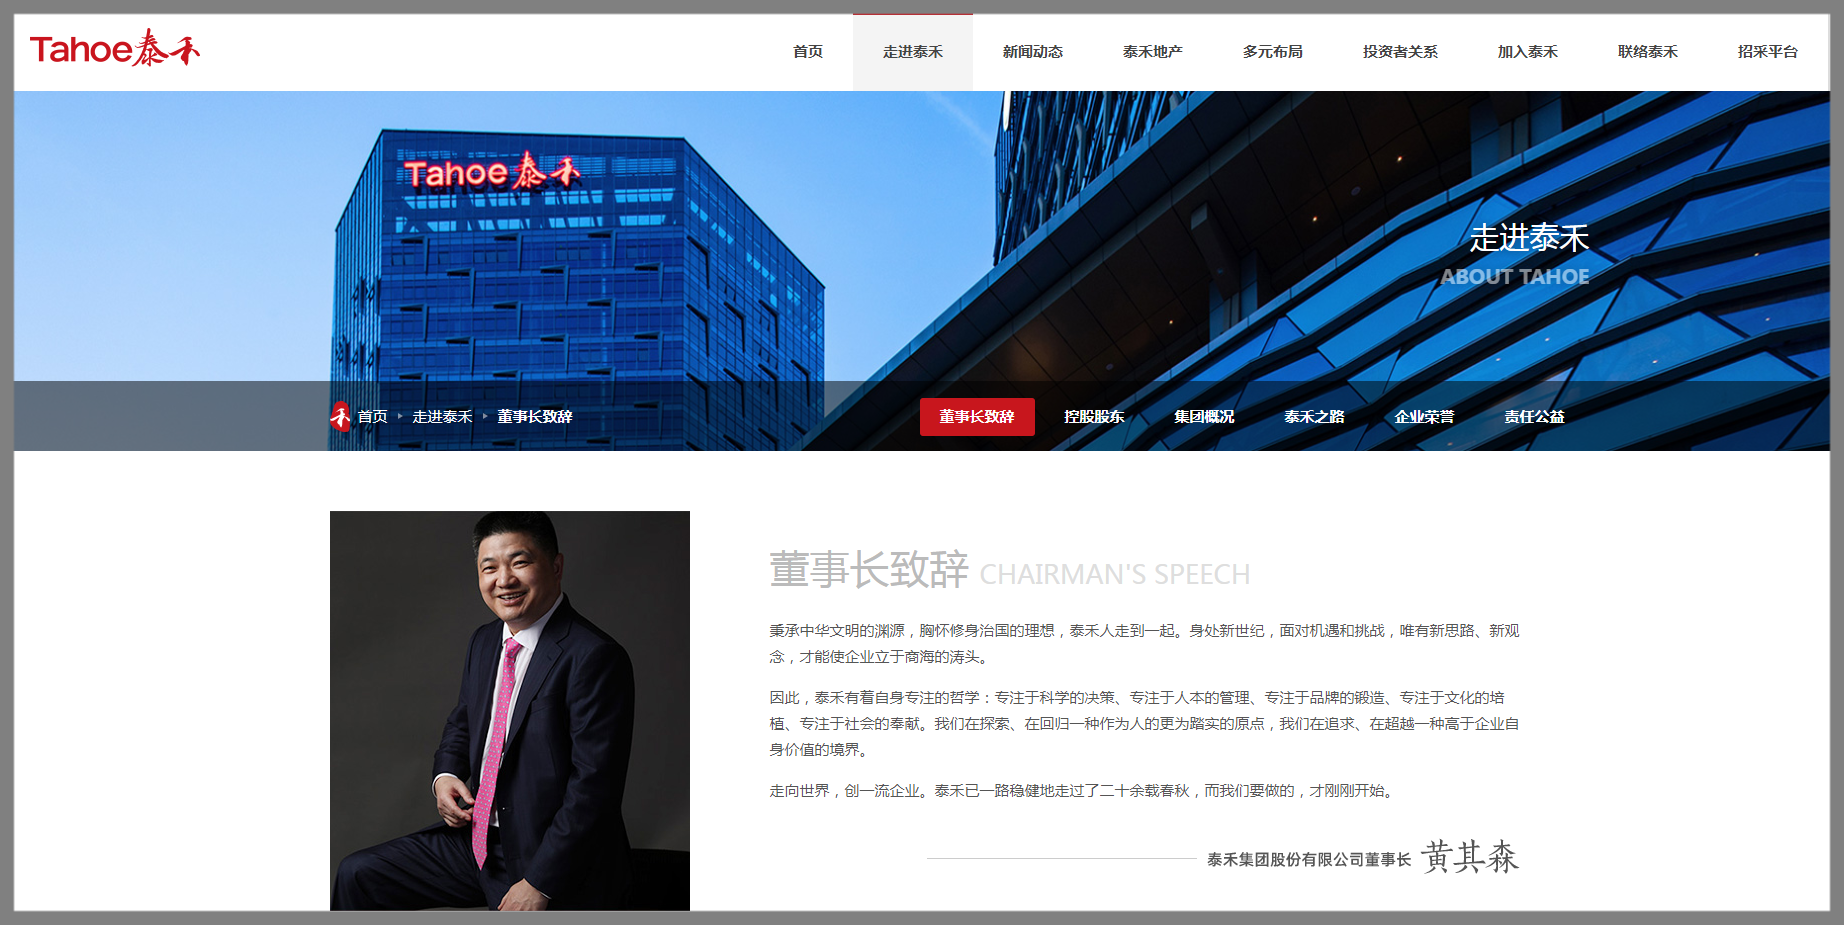 泰禾集团股份有限公司网站栏目《走进泰禾》 董事长致辞局部。.png